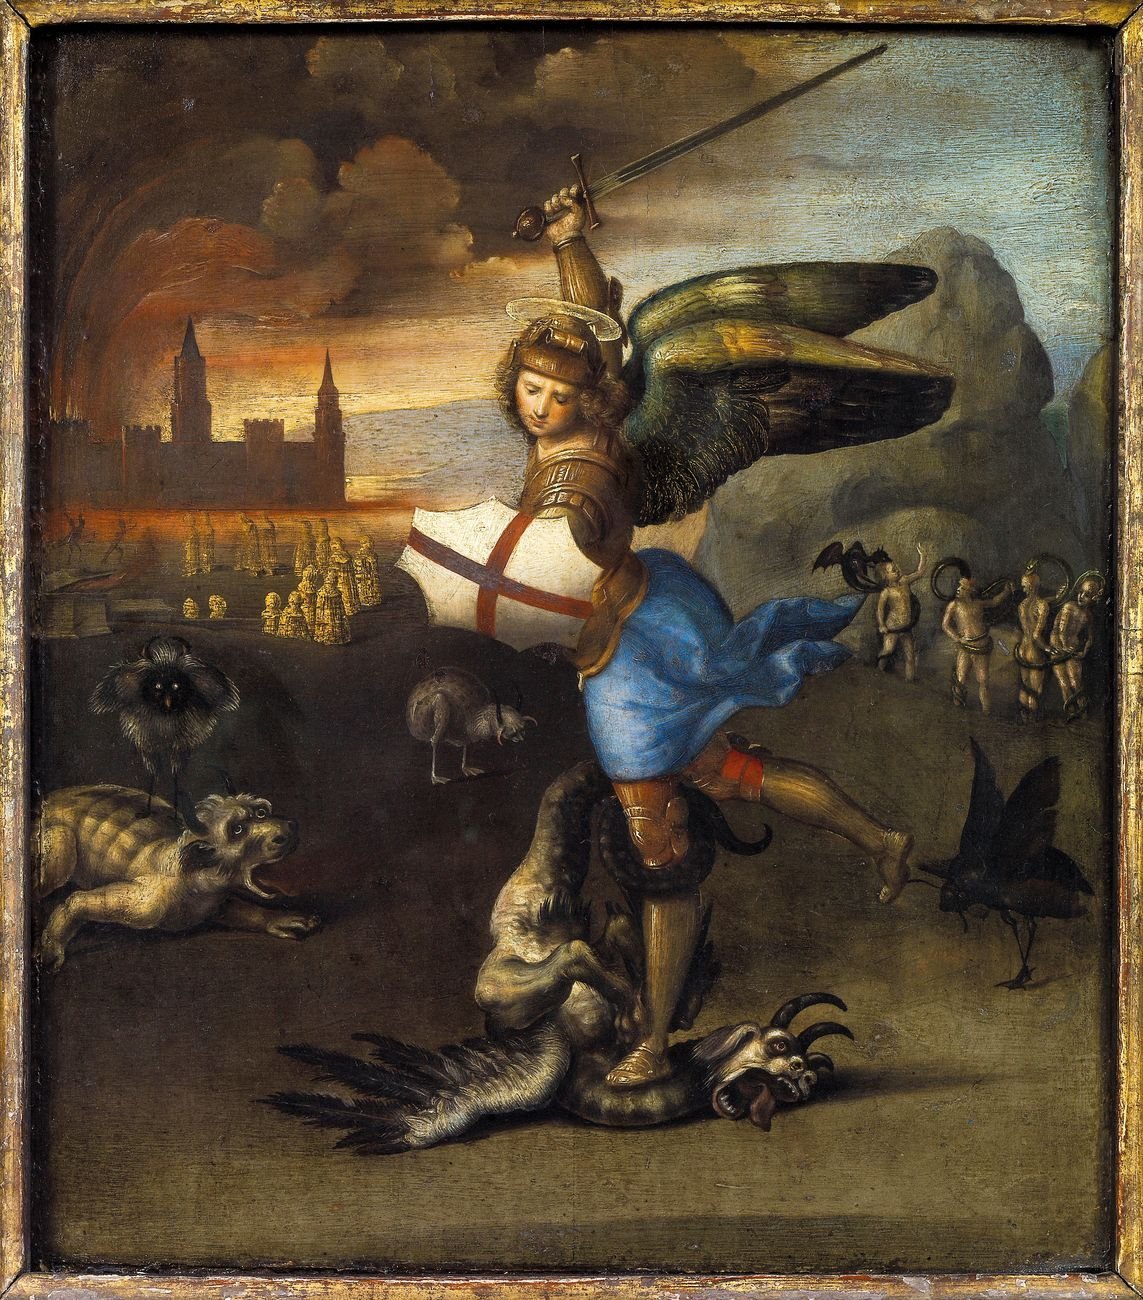 Raffaello, San Michele e il drago, 1505 ca. Musée du Louvre, Parigi. Credits Paris, Musée du Louvre, Département des Peintures